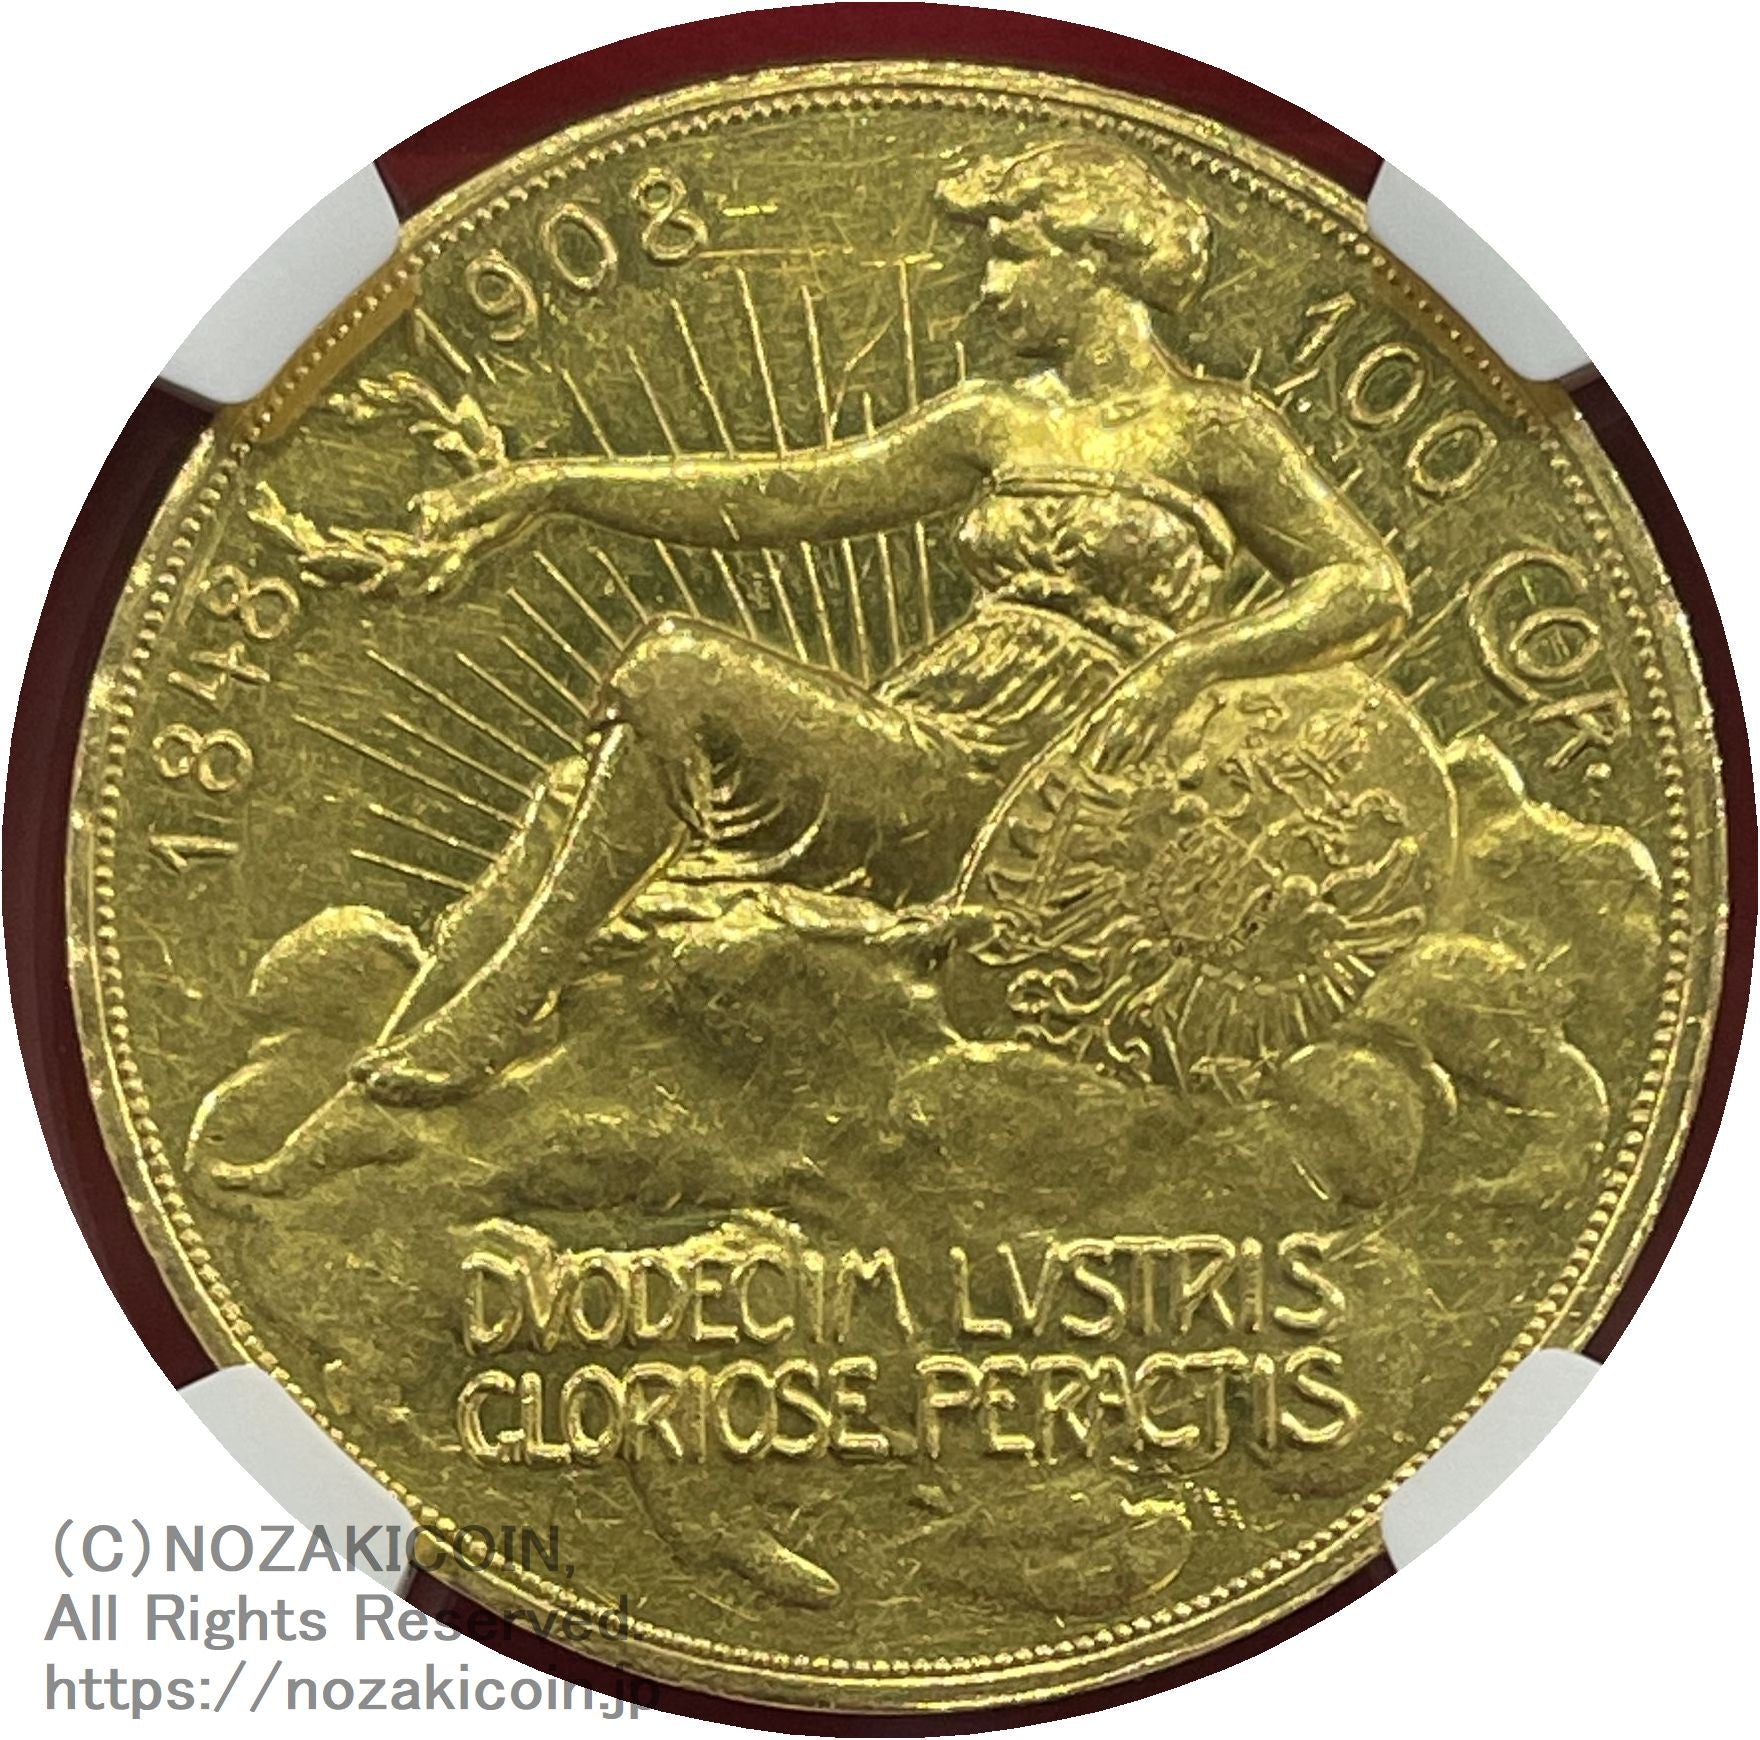 オーストリア フランツ・ヨーゼフ 100コロナ金貨 1908年 雲上の女神 